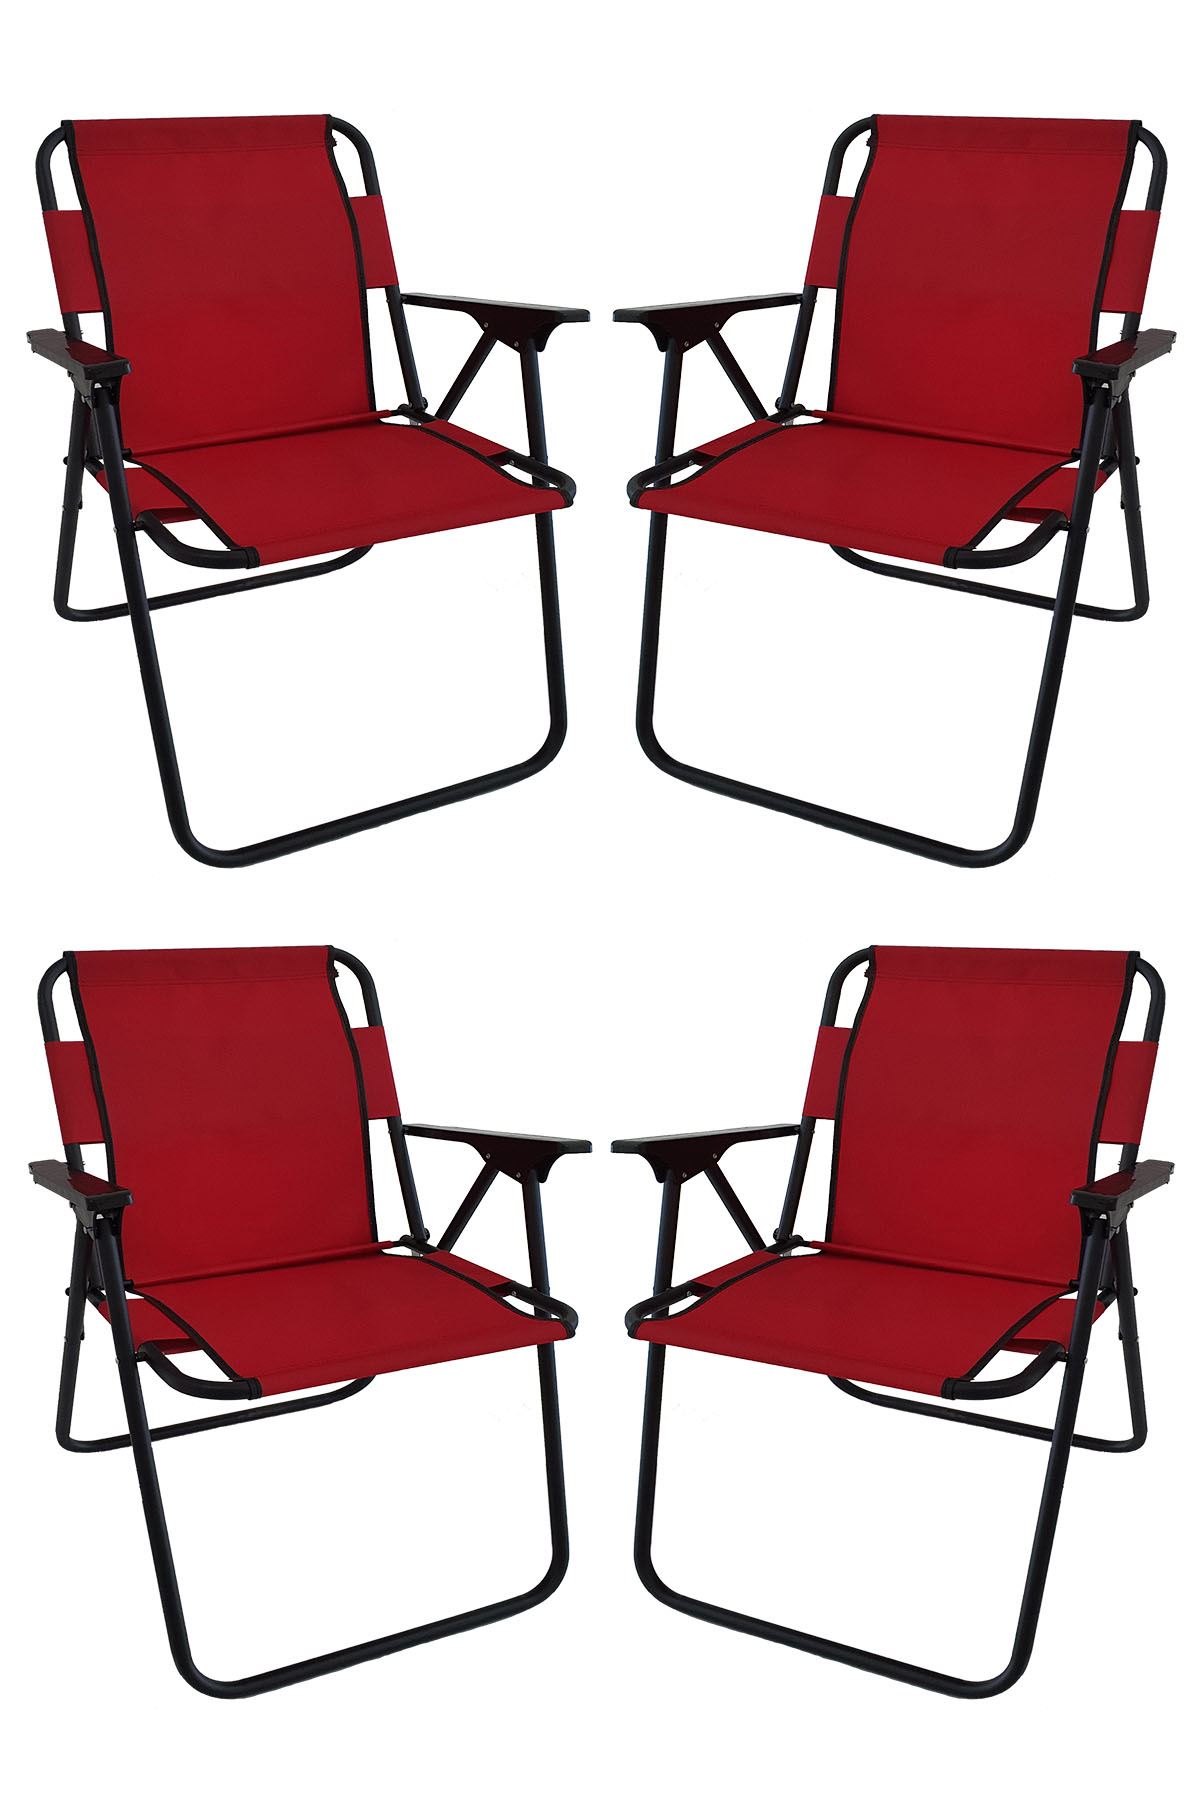 Bofigo 60X80 Granit Desenli Katlanır Masa + 4 Adet Katlanır Sandalye Kamp Seti Bahçe Takımı Kırmızı